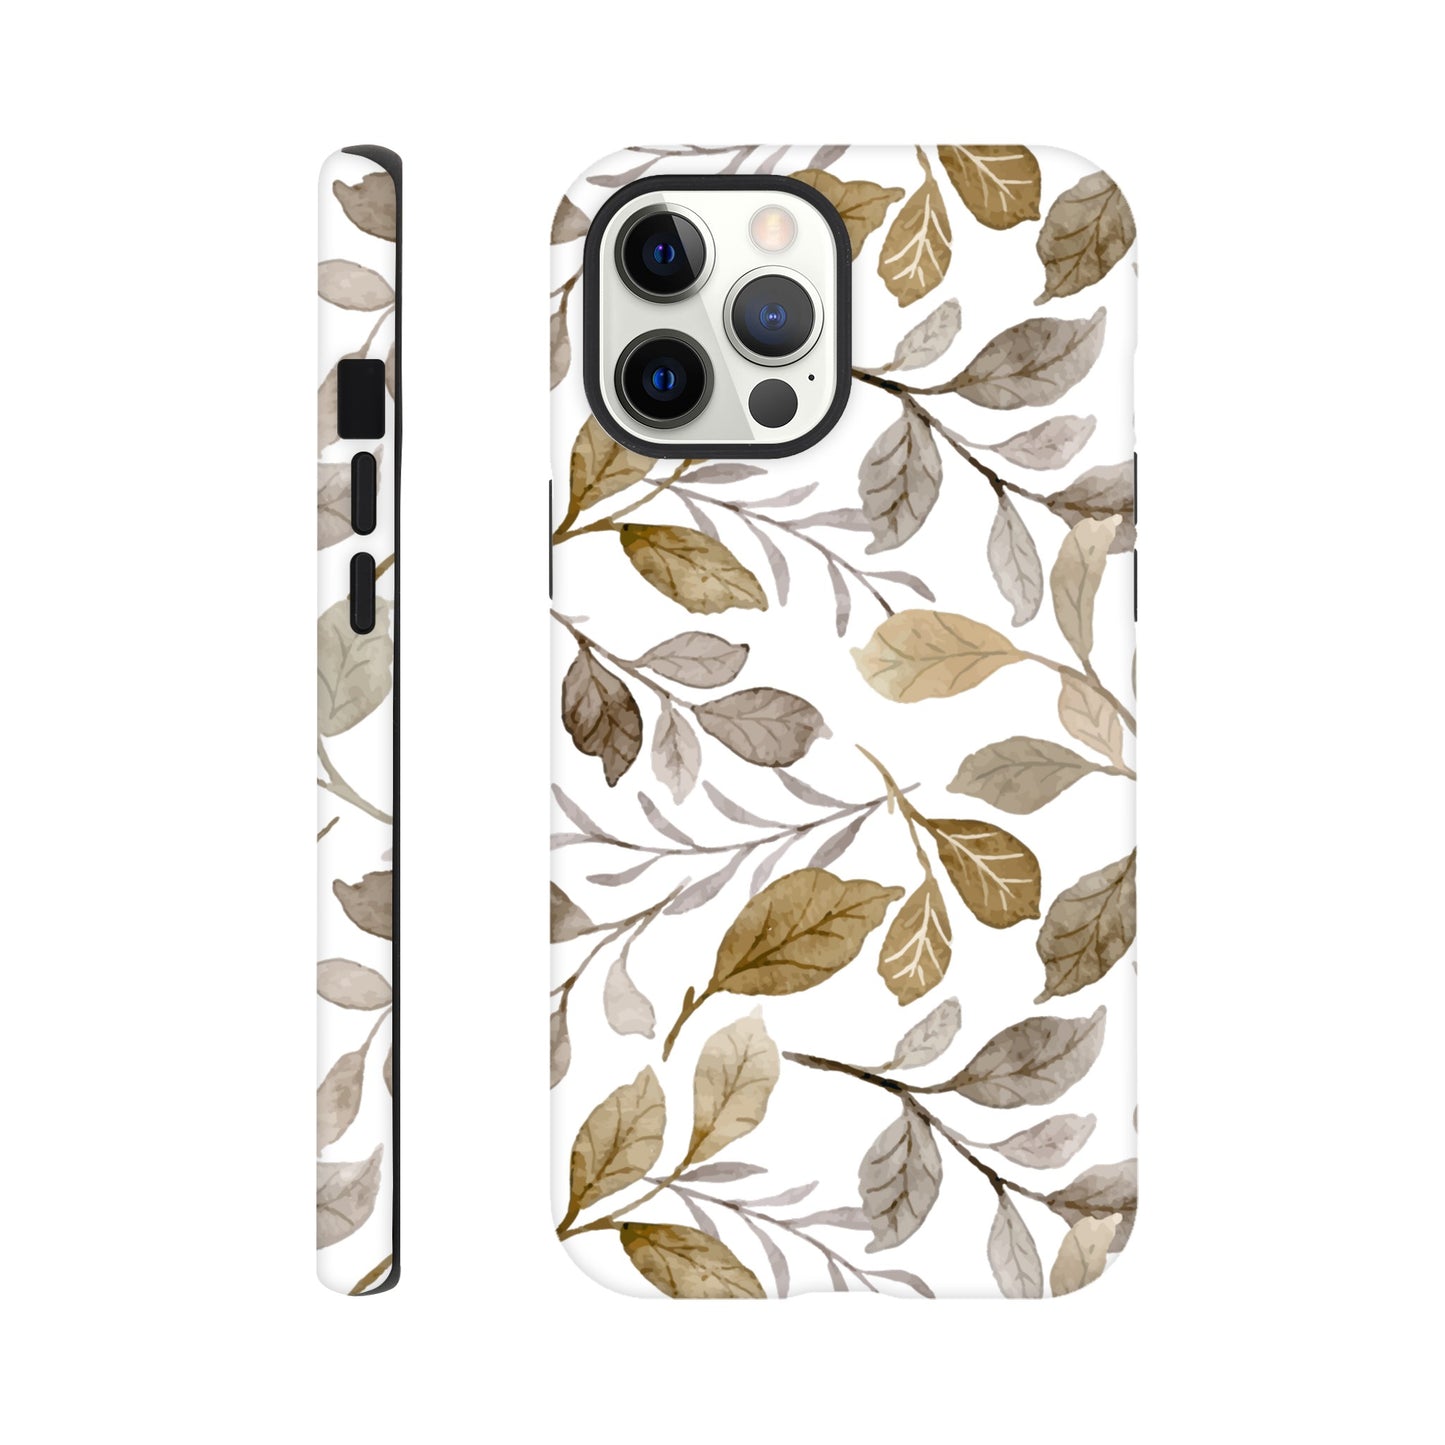 Autumn Leaves - Phone Tough Case iPhone 12 Pro Max Phone Case Plants